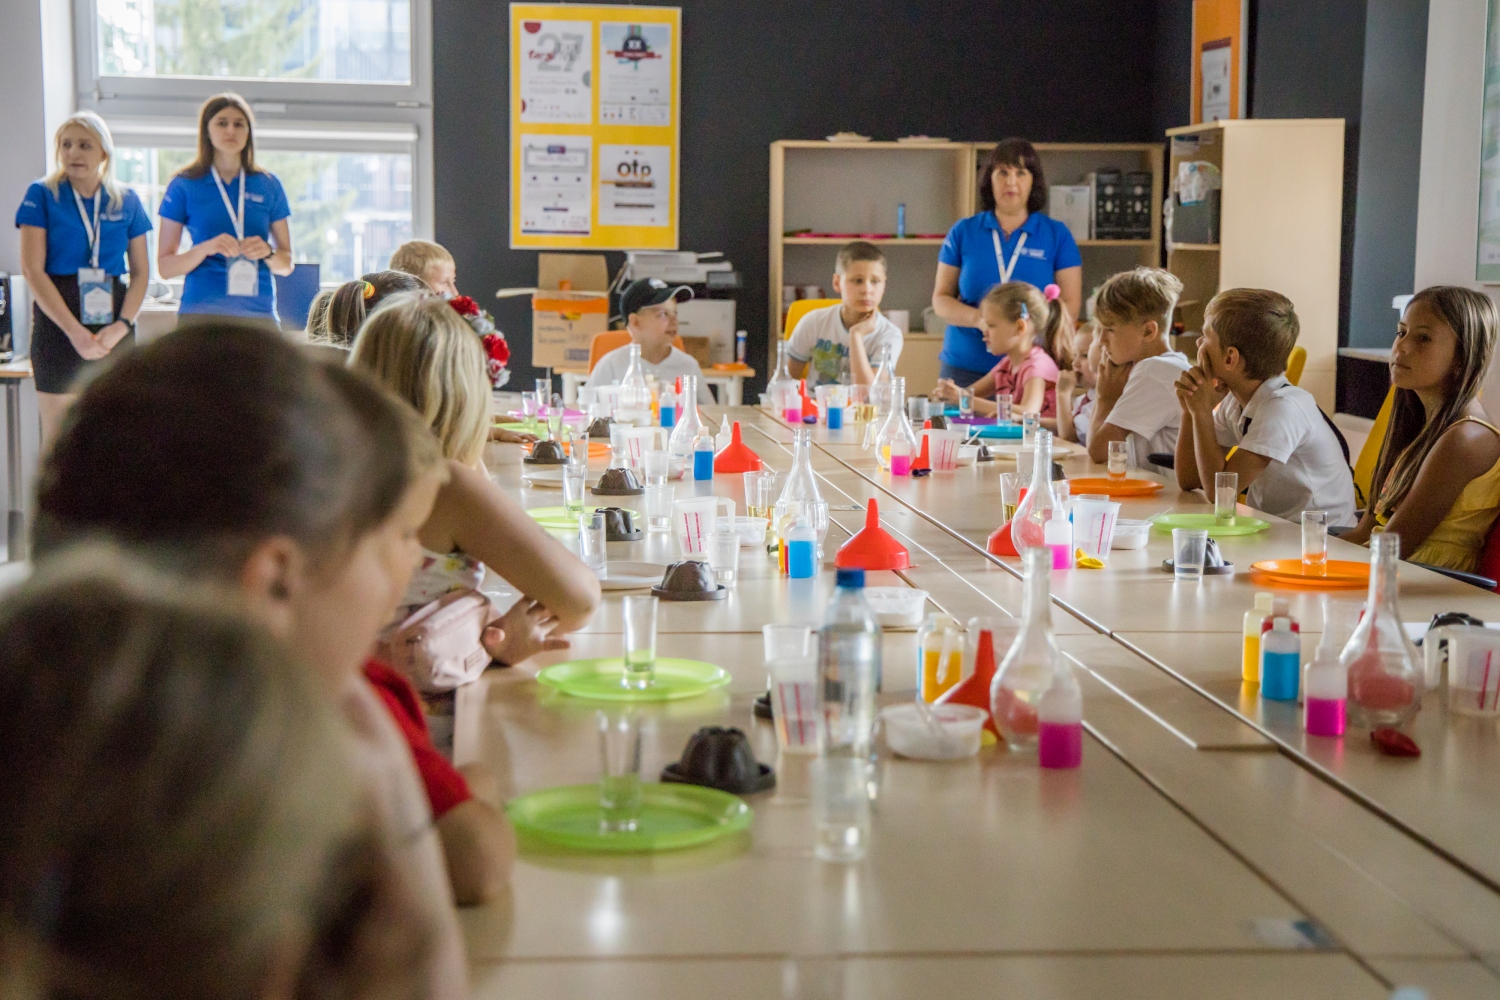 Energetyczne Centrum Nauki – warsztaty przez zabawę i eksperymentowanie zachwyciły dzieci z Ukrainy